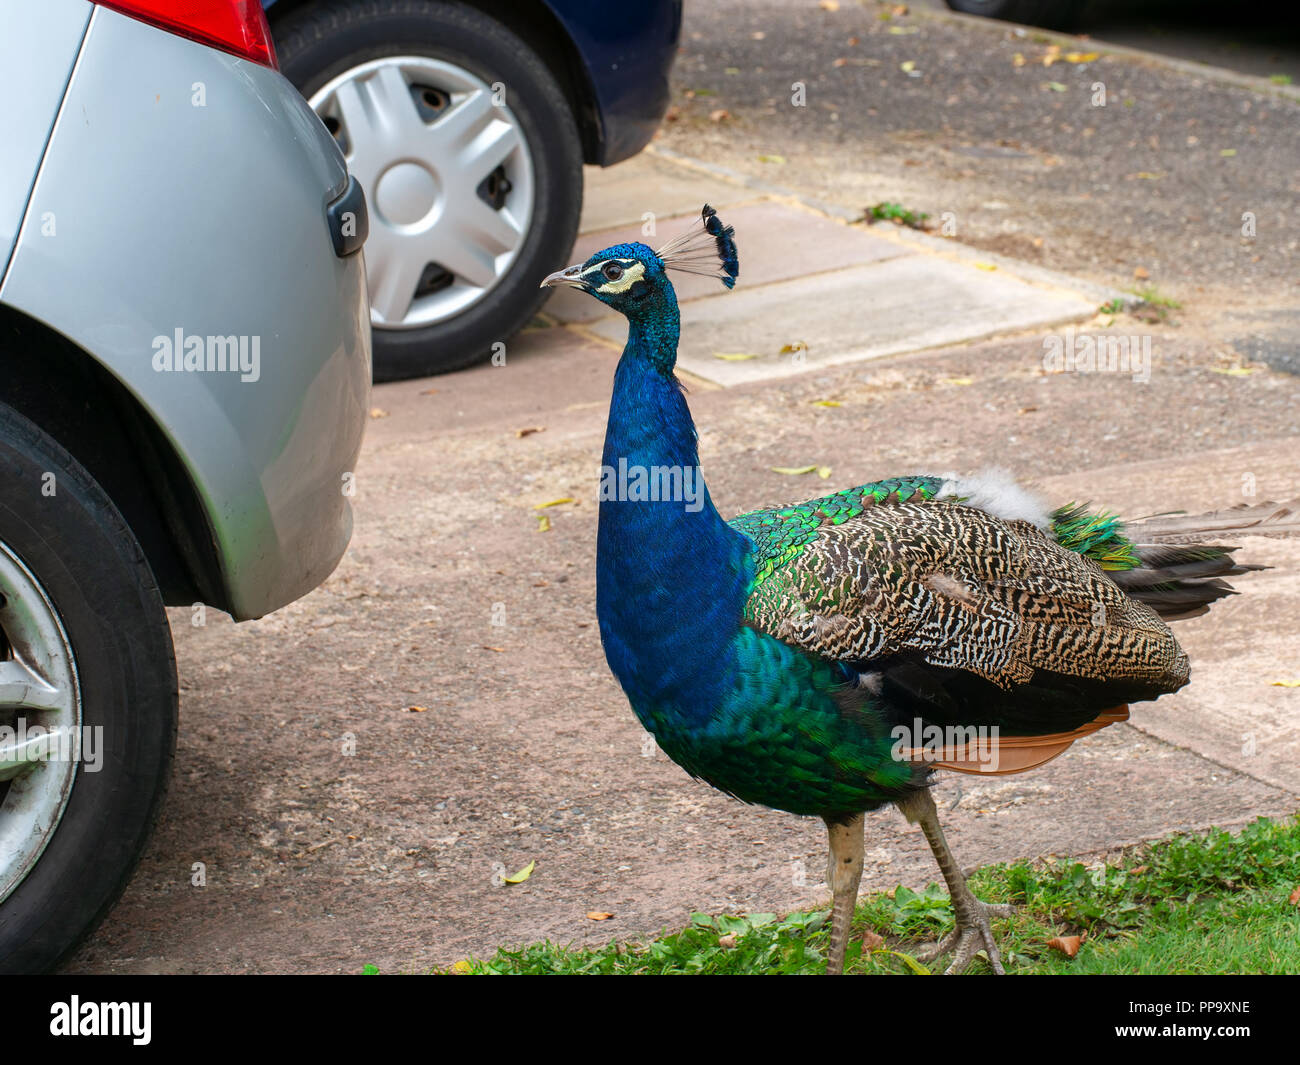 Junge, urbane, wilde Peacock Struts zwischen nicht identifizierbare Autos. UK. Stockfoto